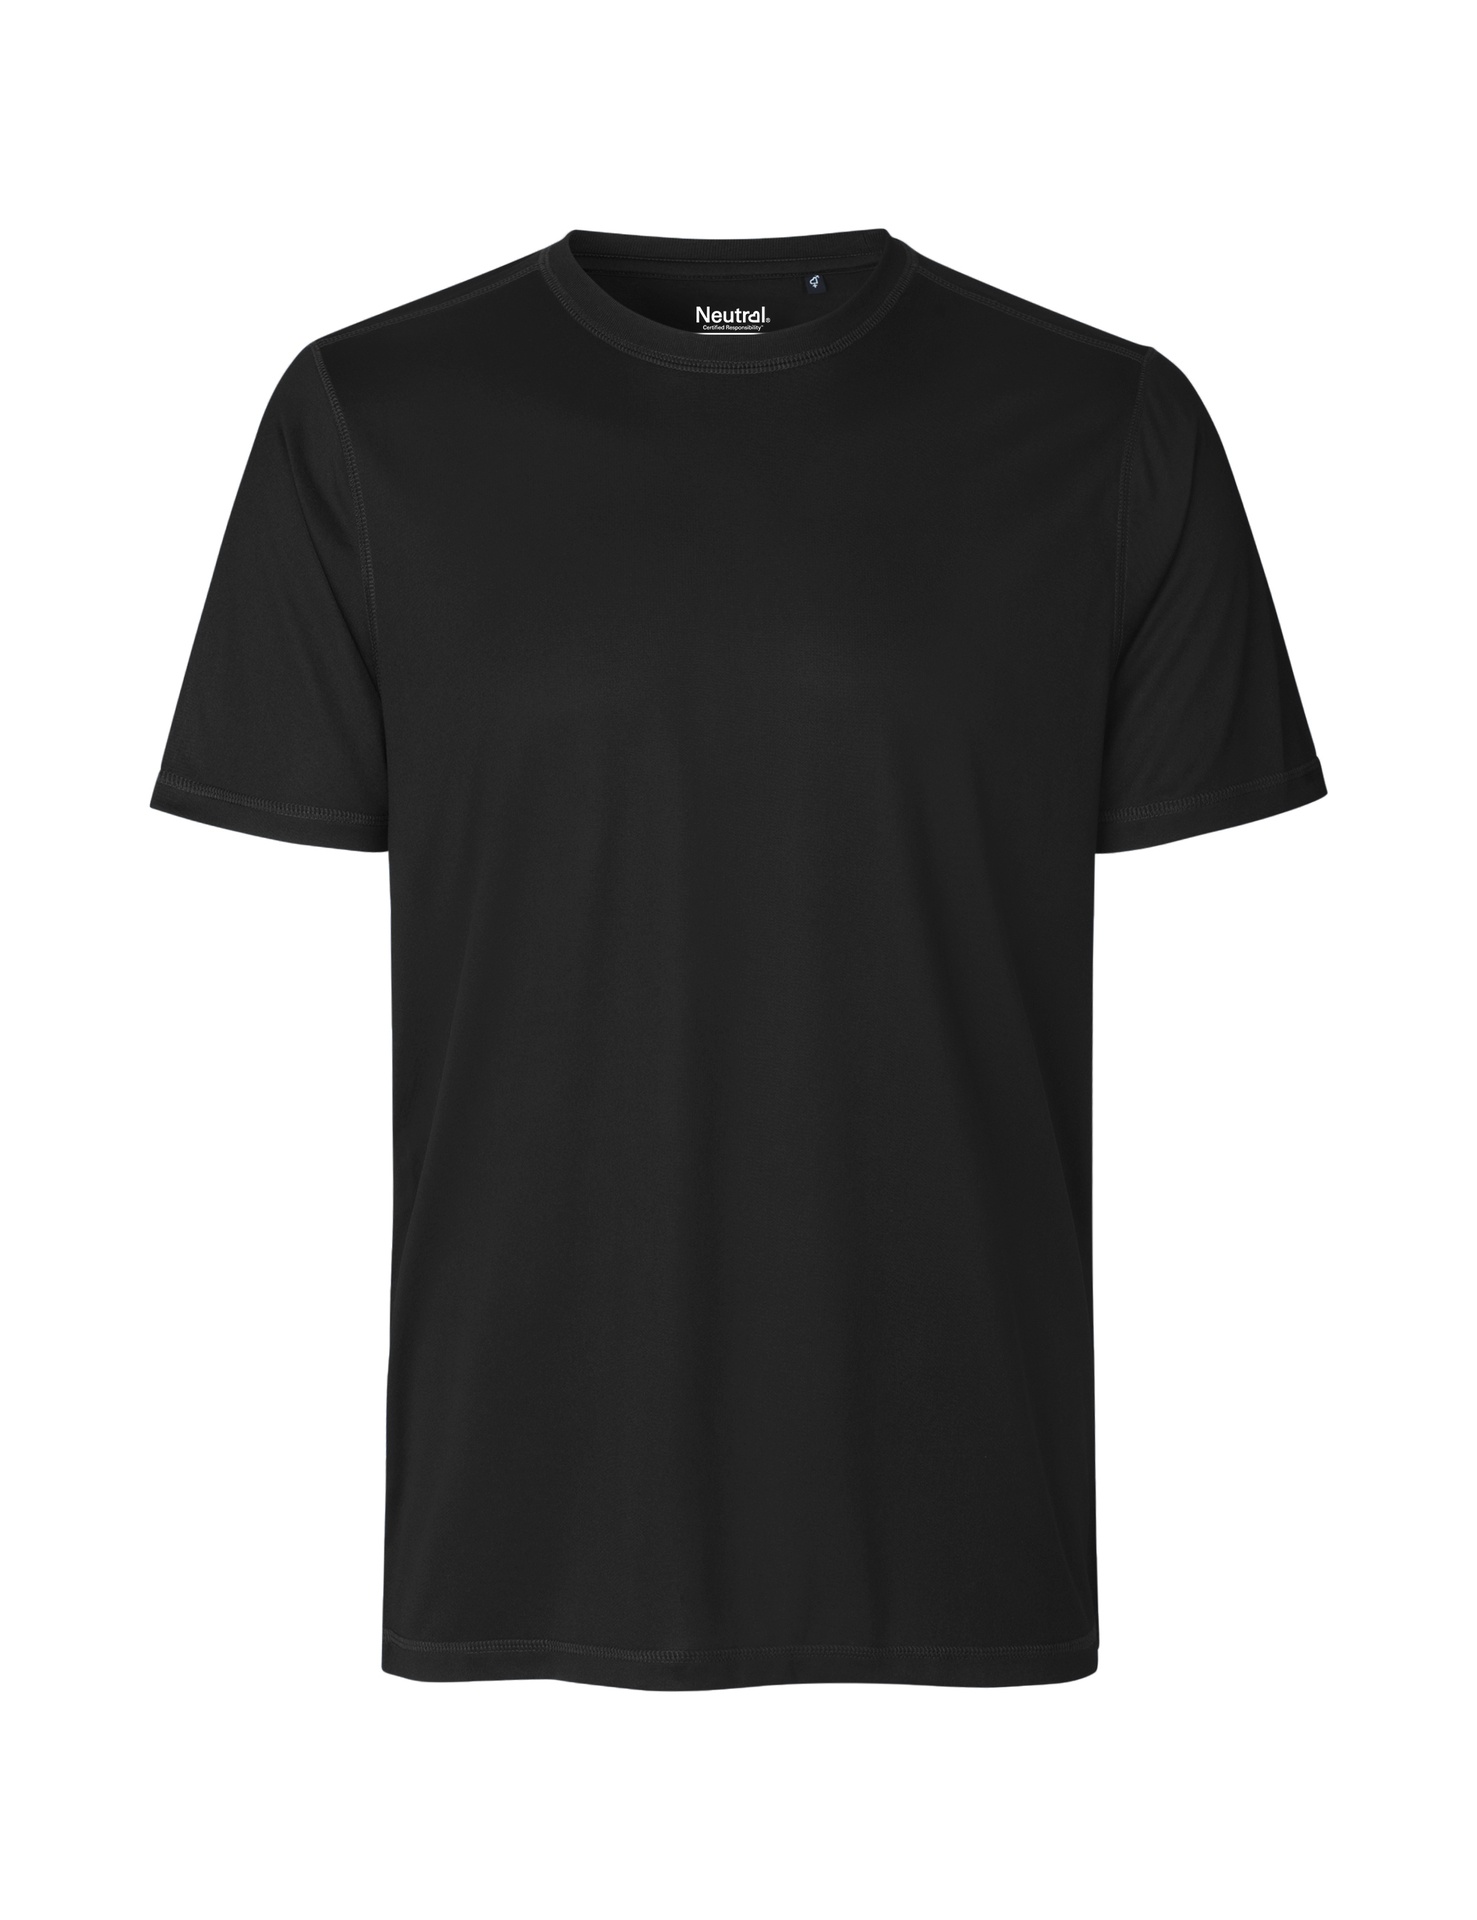 [PR/03759] Recycled Performance T-Shirt (Black 03, 3XL)